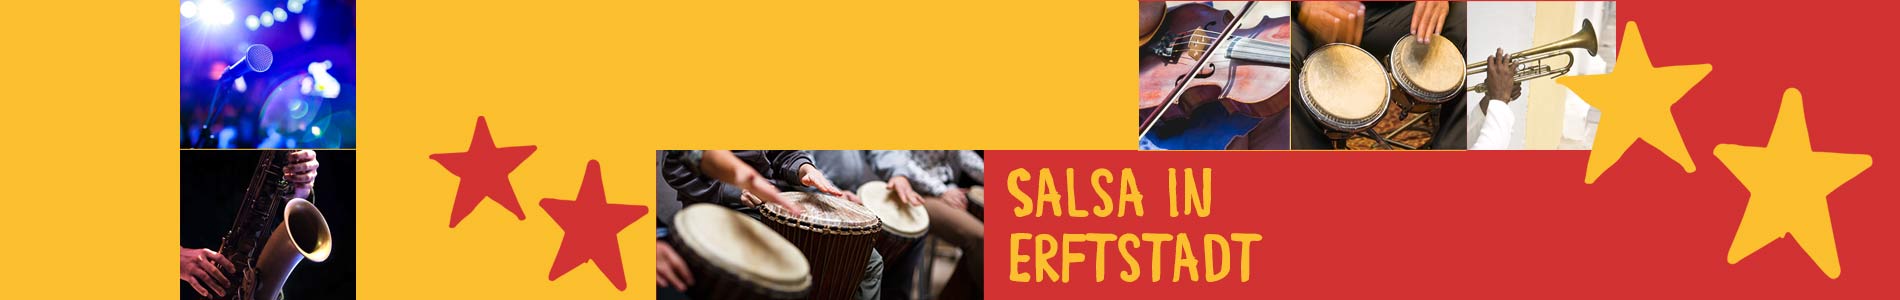 Salsa in Erftstadt – Salsa lernen und tanzen, Tanzkurse, Partys, Veranstaltungen